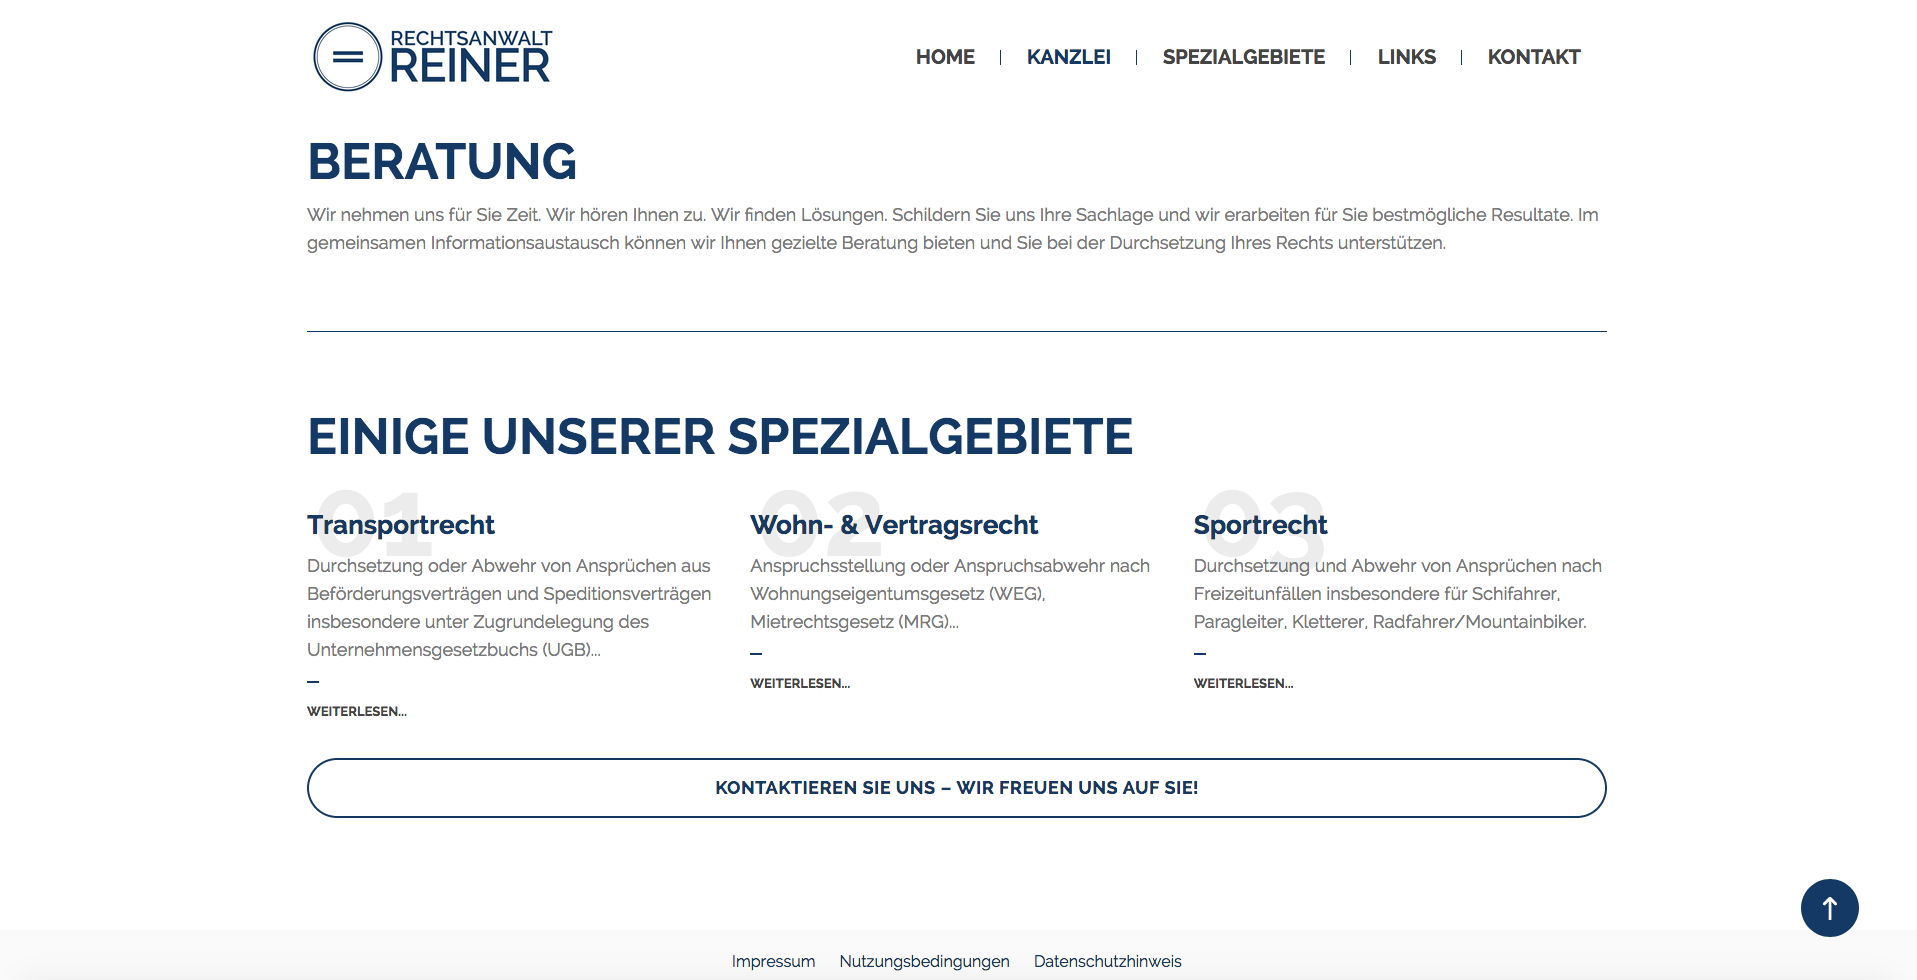 Fresh Herbs Communications Marketing Projektmanagement Website Salzburg_66_Kanzlei Reiner